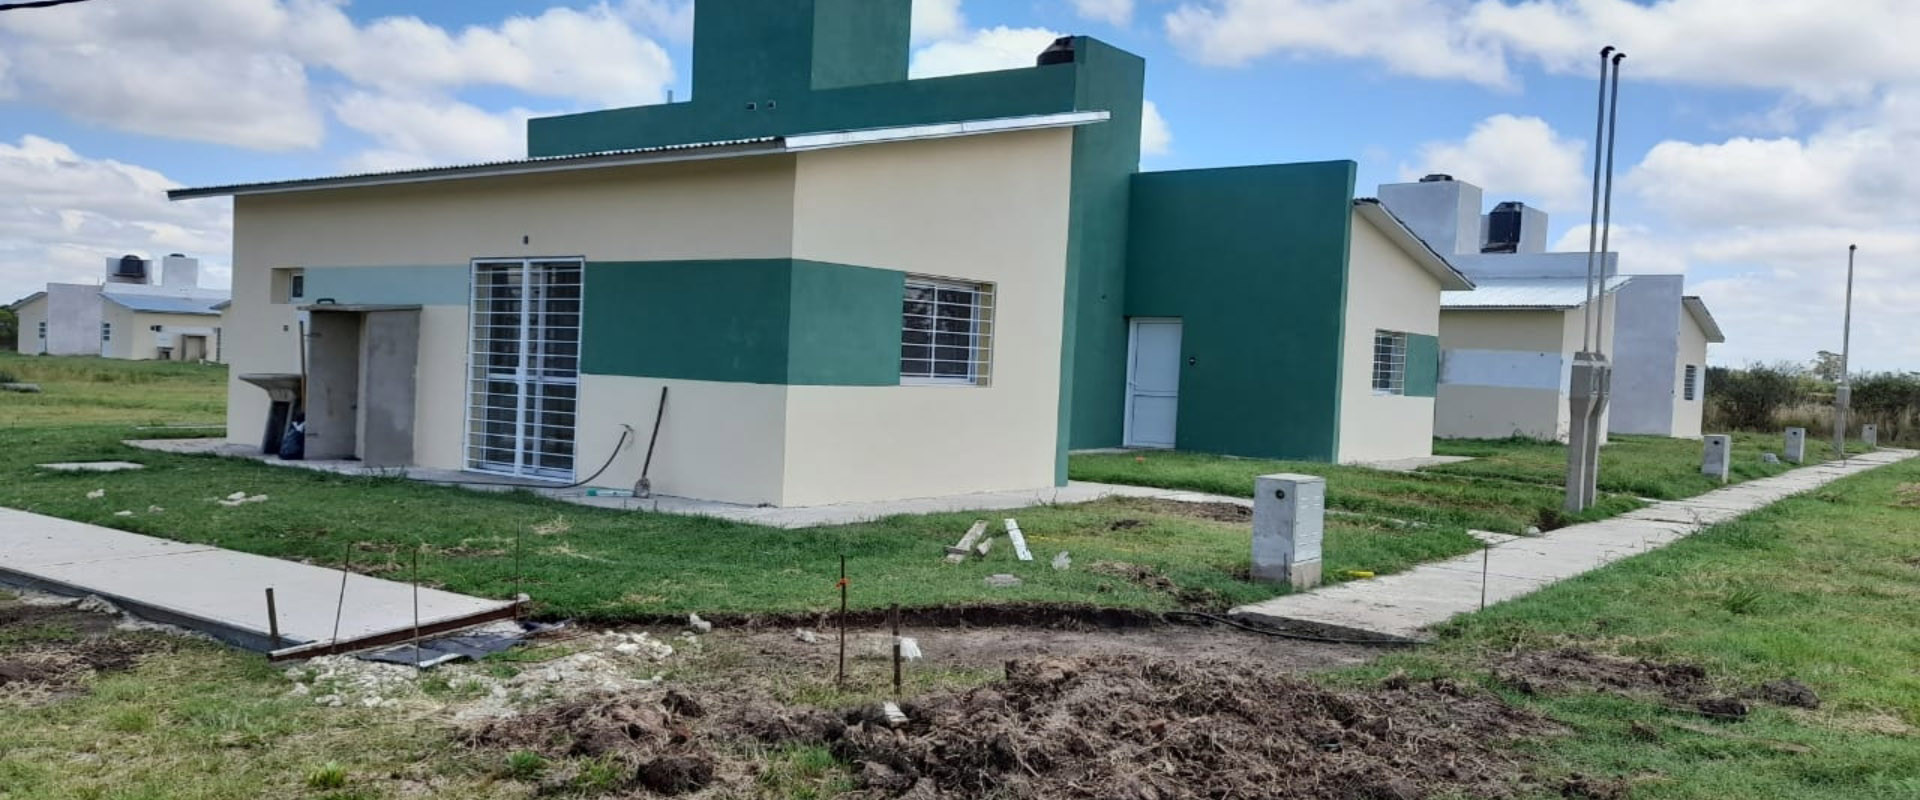 Con un gran grado de avance, se construyen viviendas en tres localidades entrerrianas